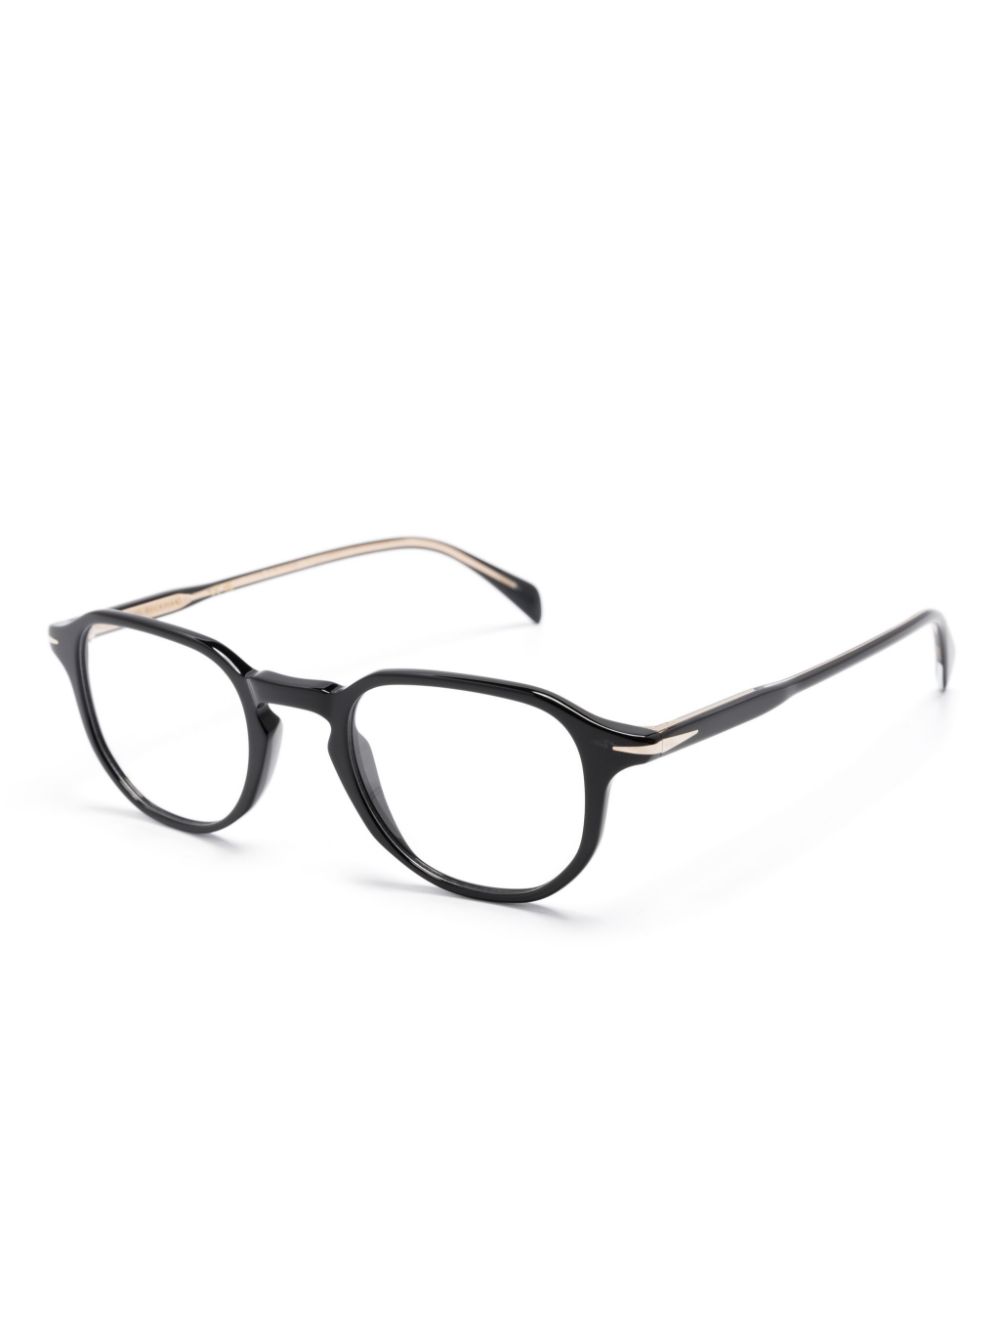 Eyewear by David Beckham DB 1140 bril met rond montuur - Zwart